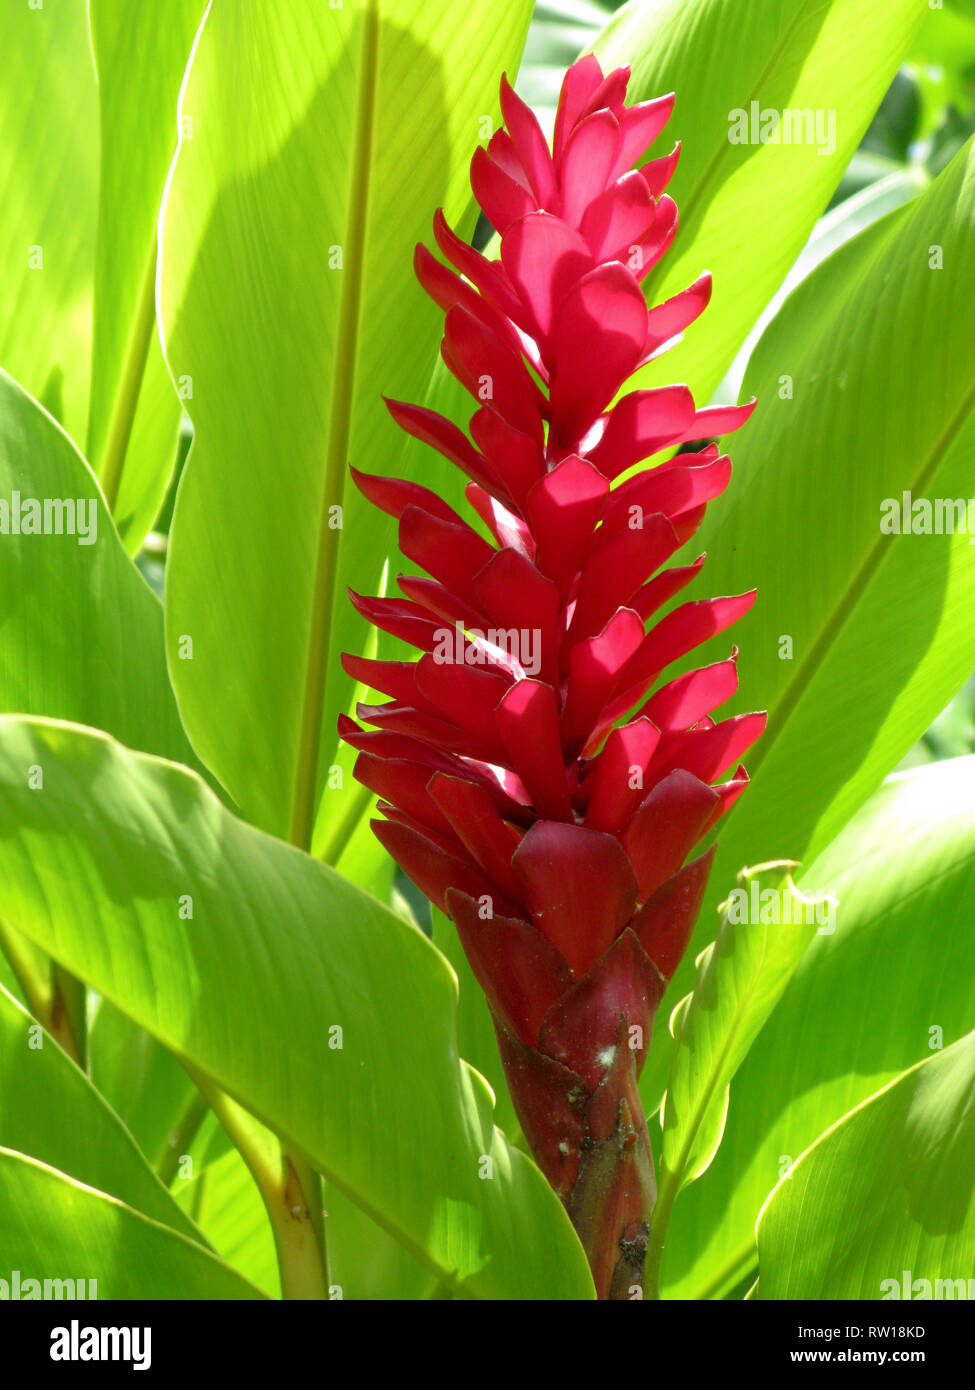 Alpinia purpurata rouge, gingembre, également appelé plume Autruche rose et gingembre, cône sont des plantes à fleurs voyantes de Malaisie. Banque D'Images